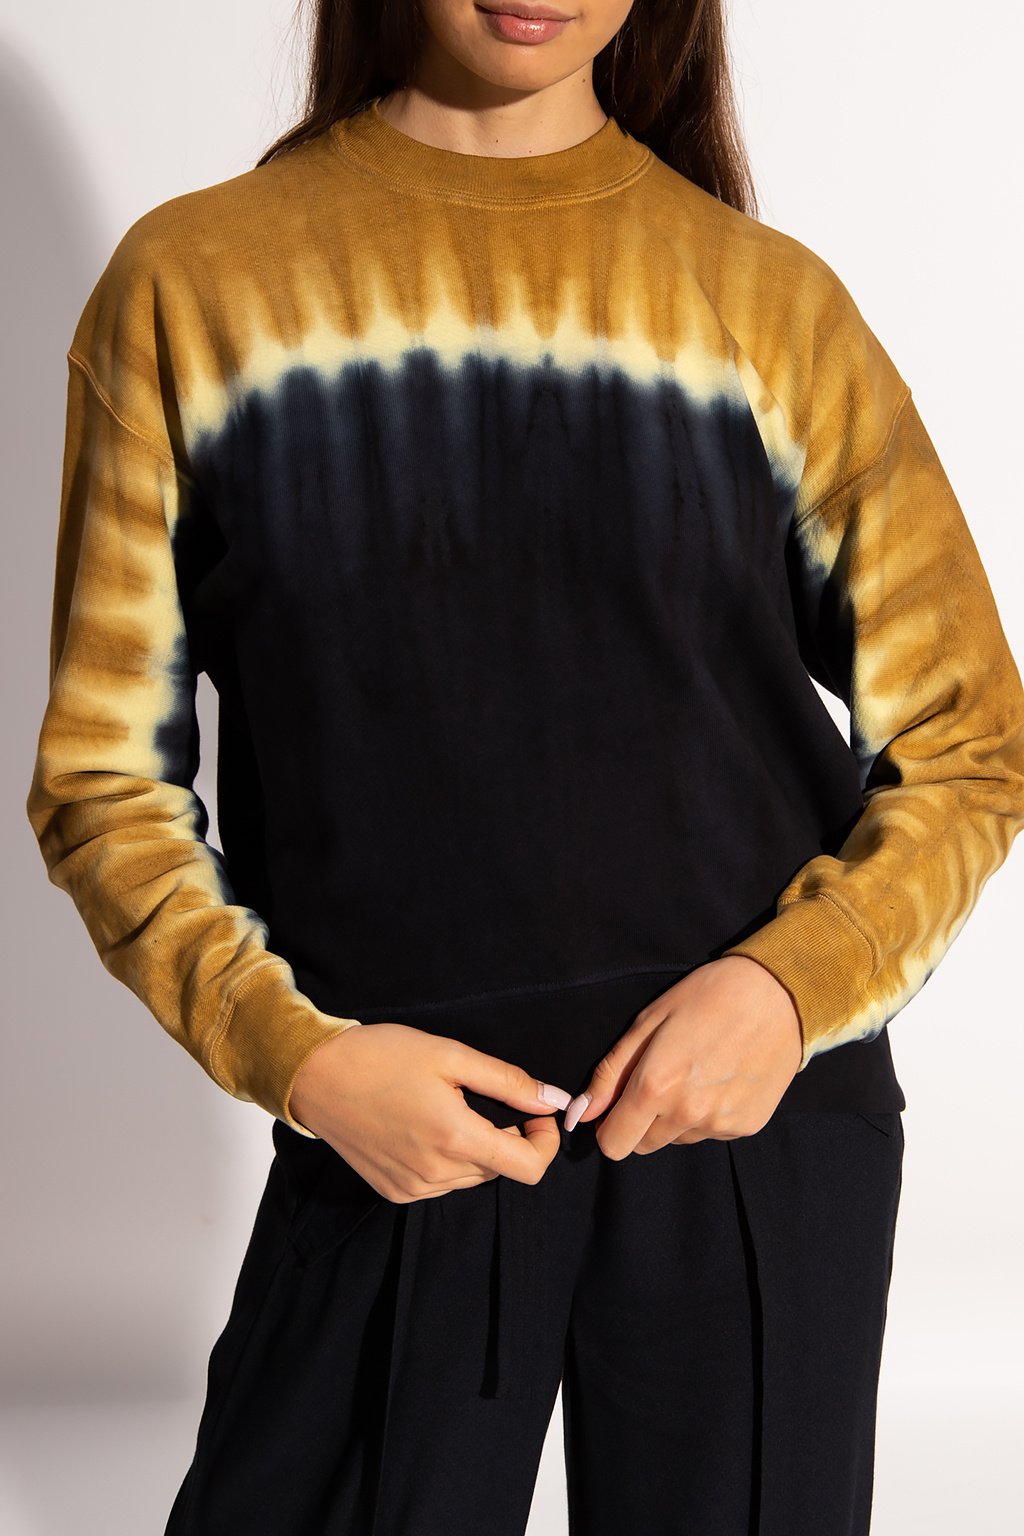 proenza Rollkragen Schouler Textured Tweed Tiered Skirt Black Tie-dye sweatshirt